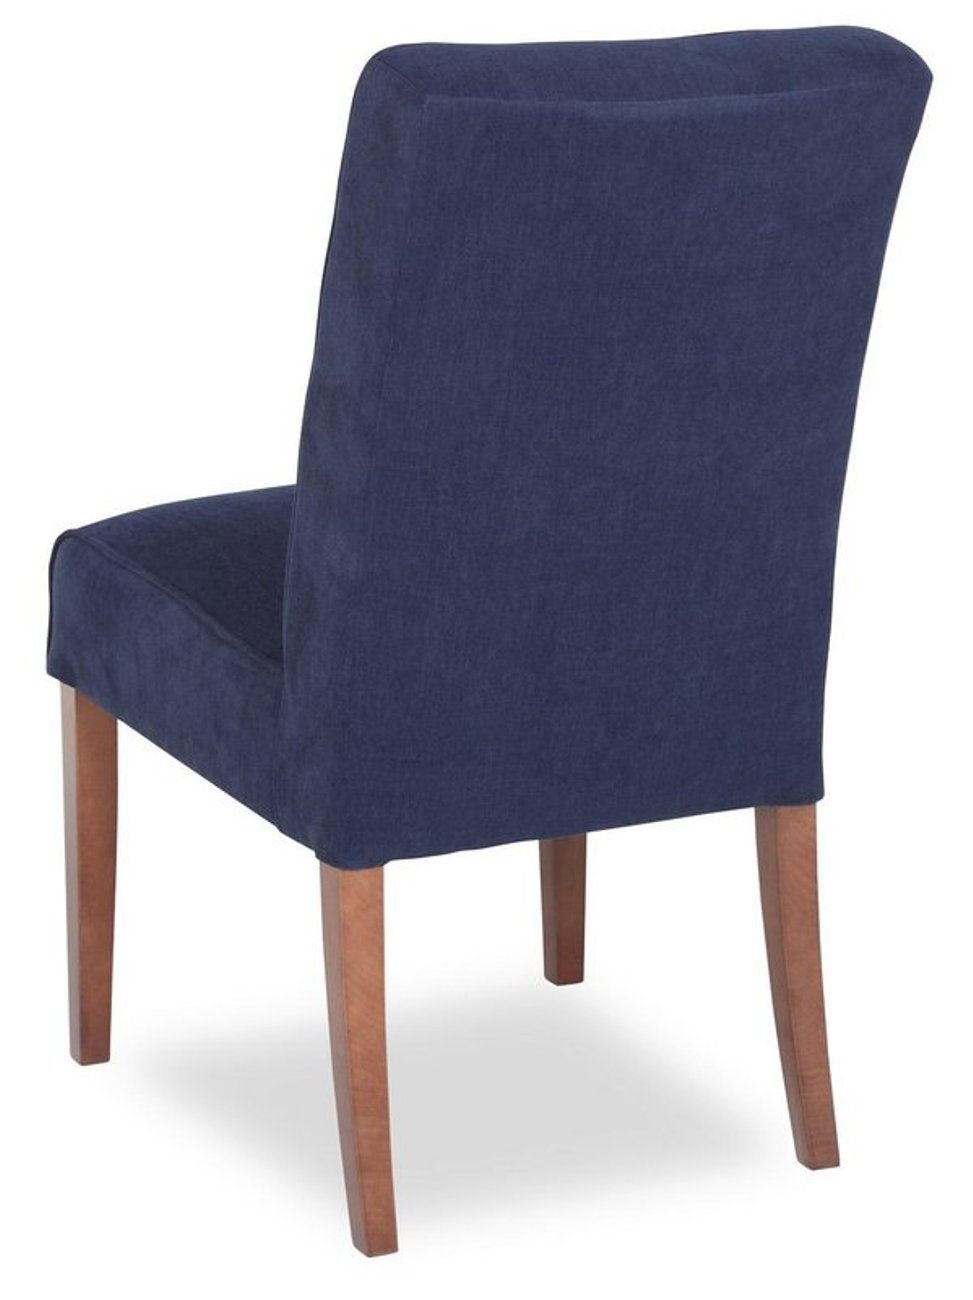 Garnitur Design Sessel Stuhl Stühle Set Polster Neu Chesterfield-Sessel, JVmoebel 2x Gruppe Chesterfield Lehn